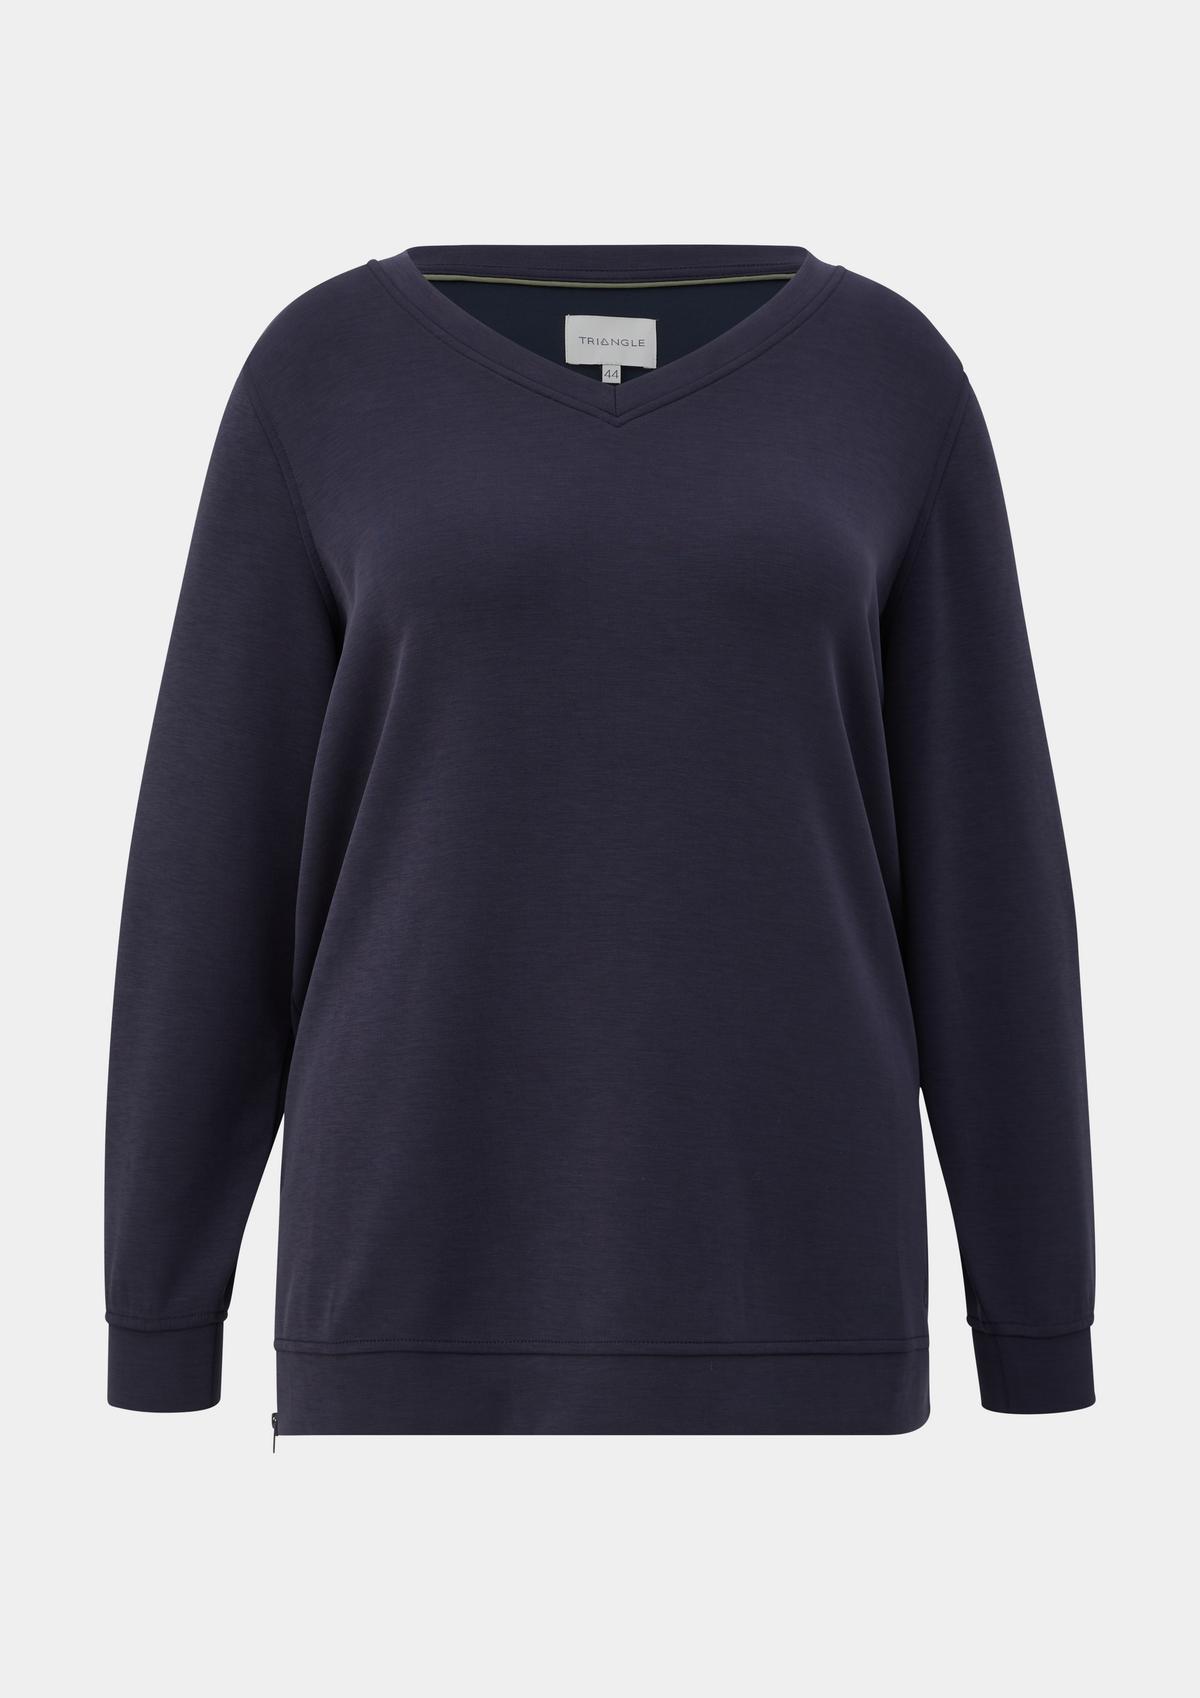 s.Oliver Modal blend sweatshirt